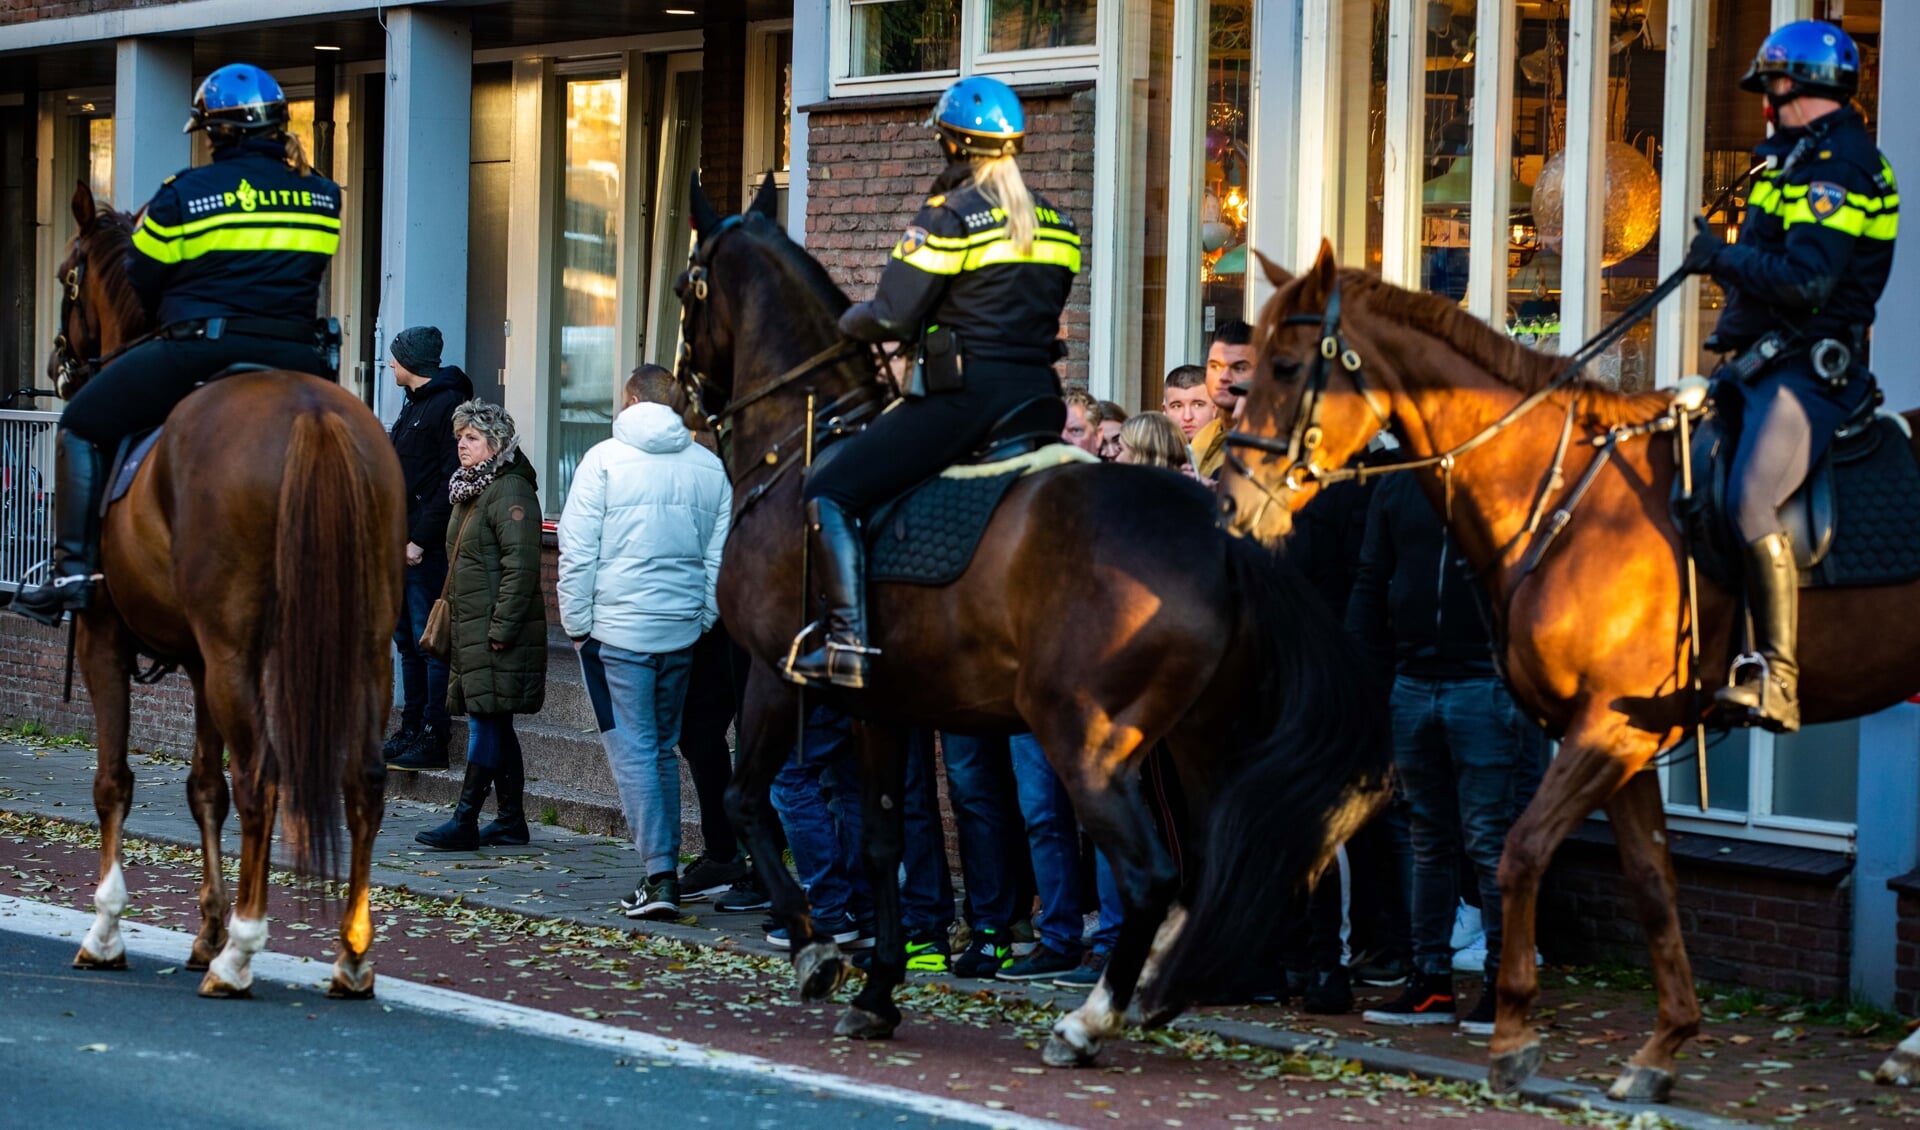 De politie moest handelend optreden tijdens de intocht van Sinterklaas in Hilversum. 